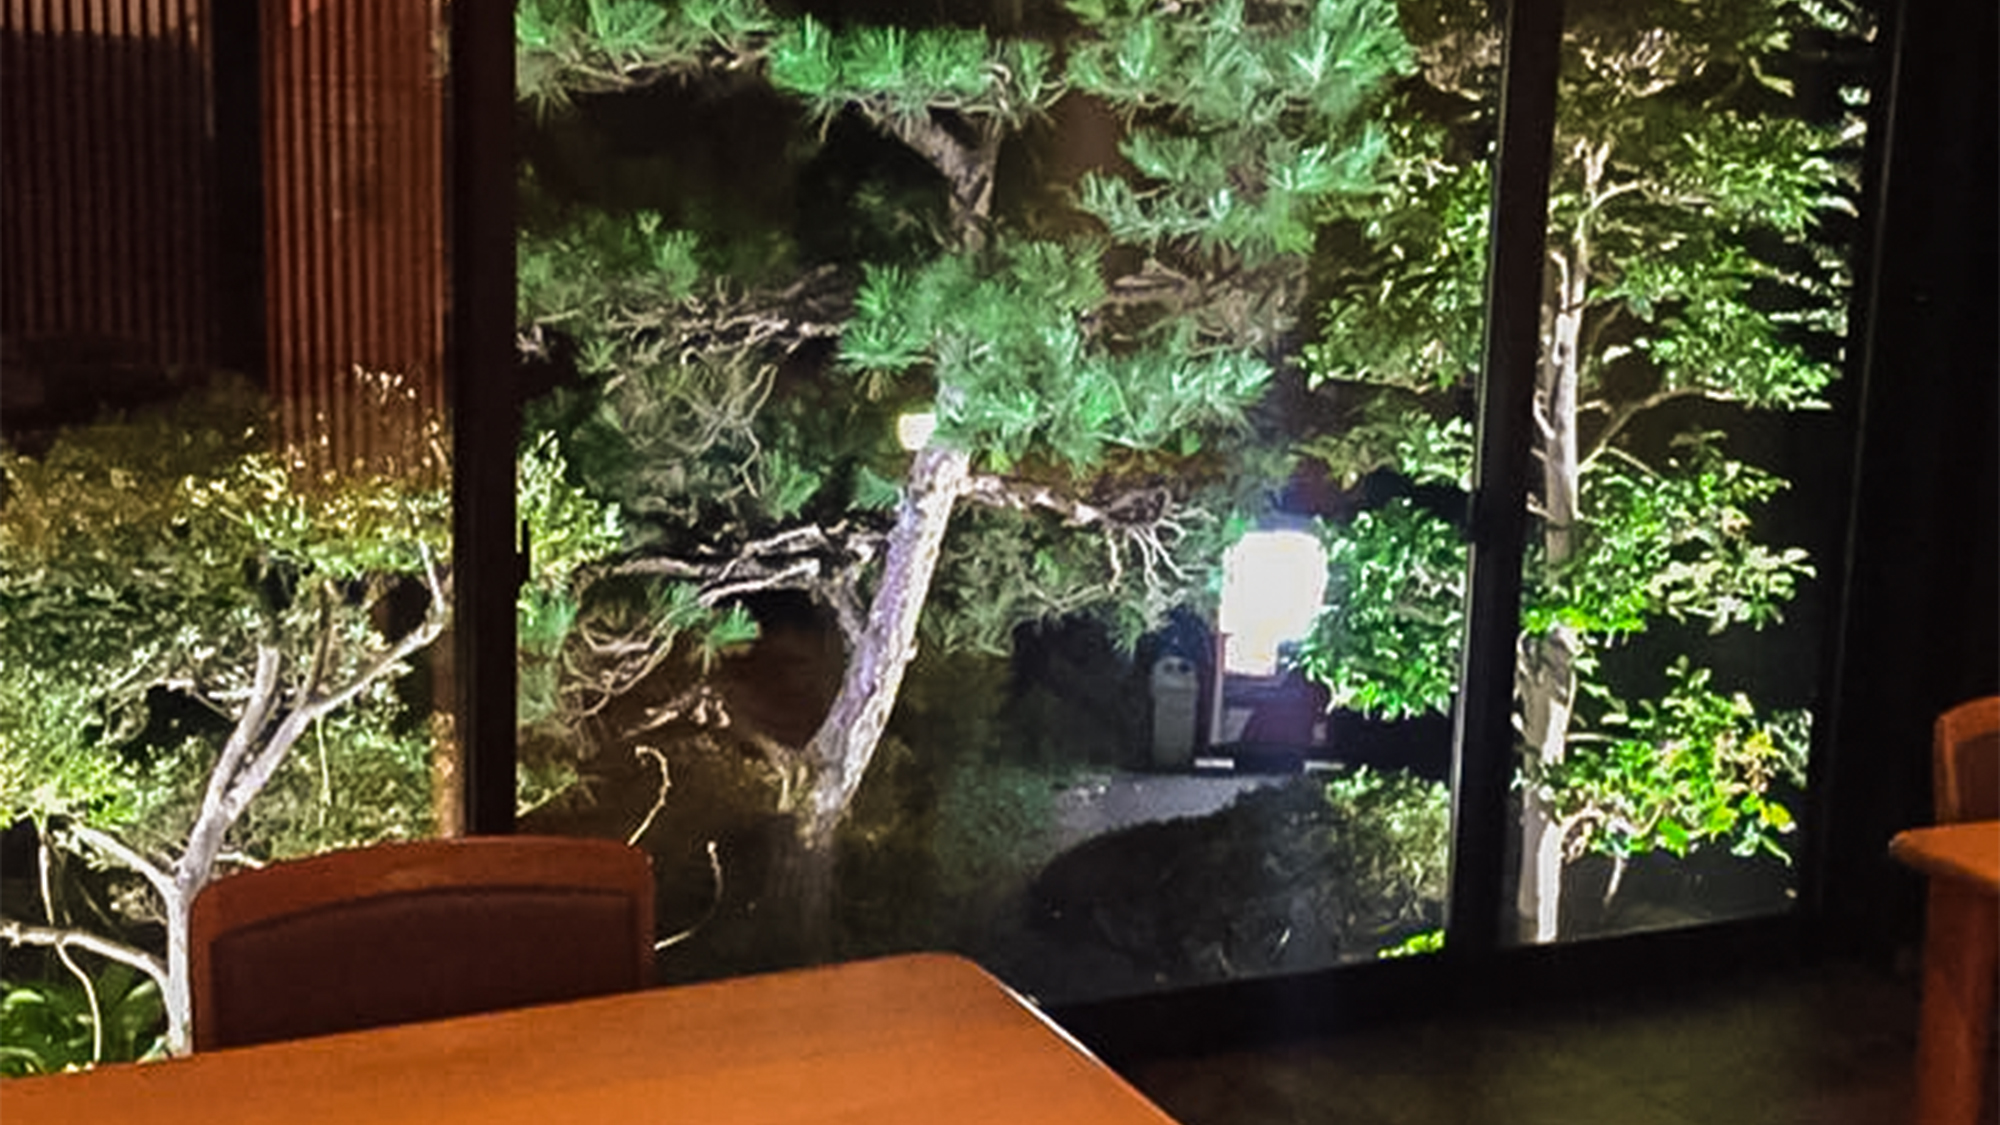 *【ダイニング】窓の外には四季折々の風景があります。夜には松をライトアップしています。